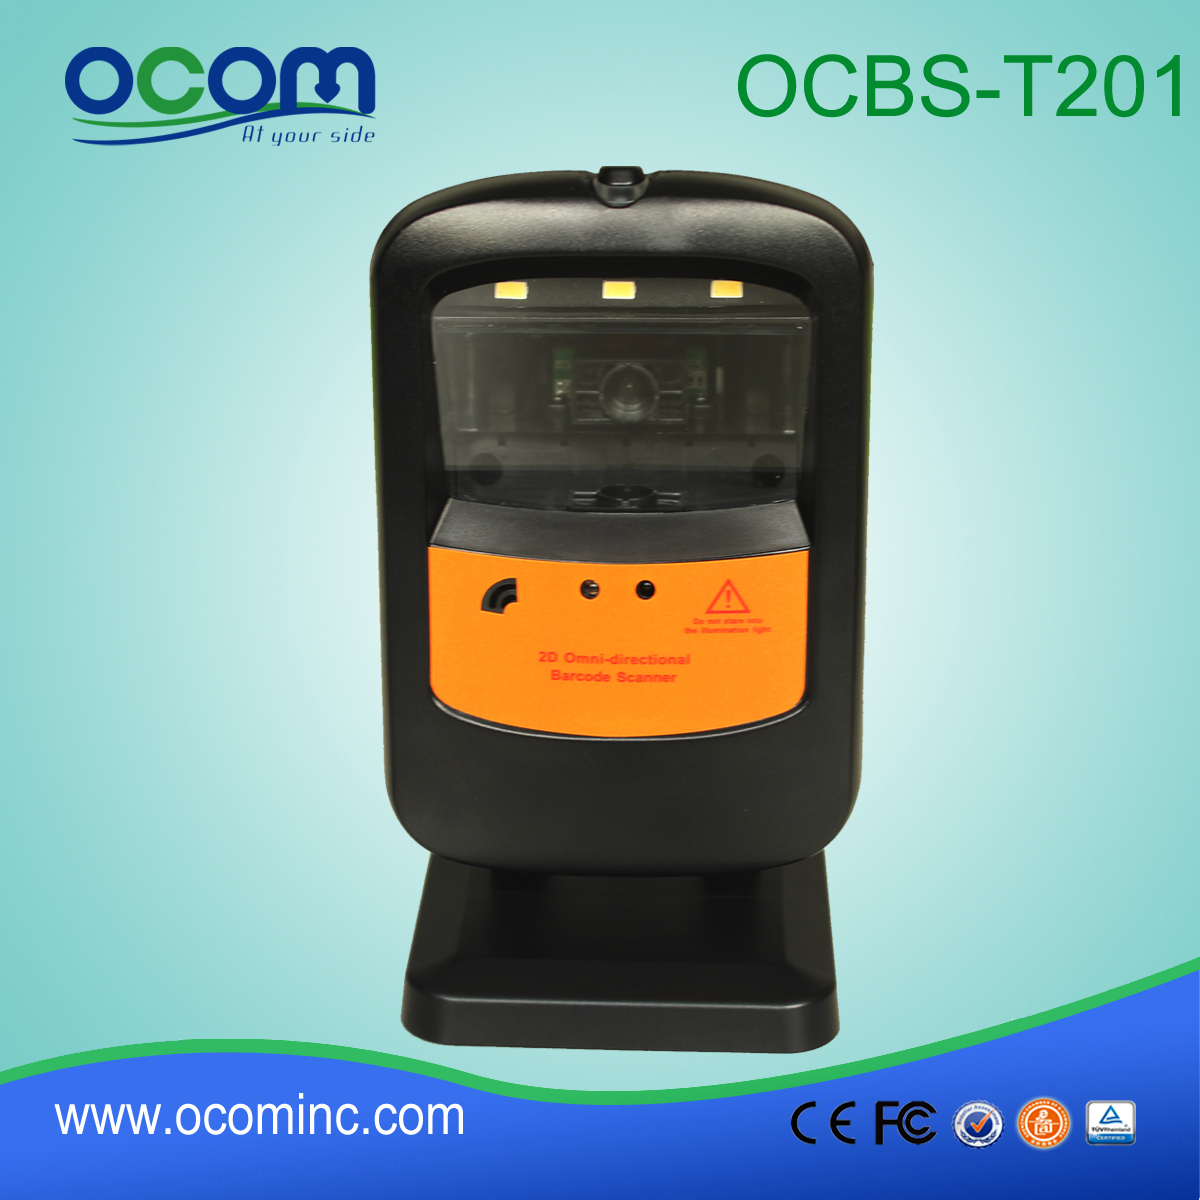 配有稳定底座的二维条码扫描仪模块 (OCBS-T201)